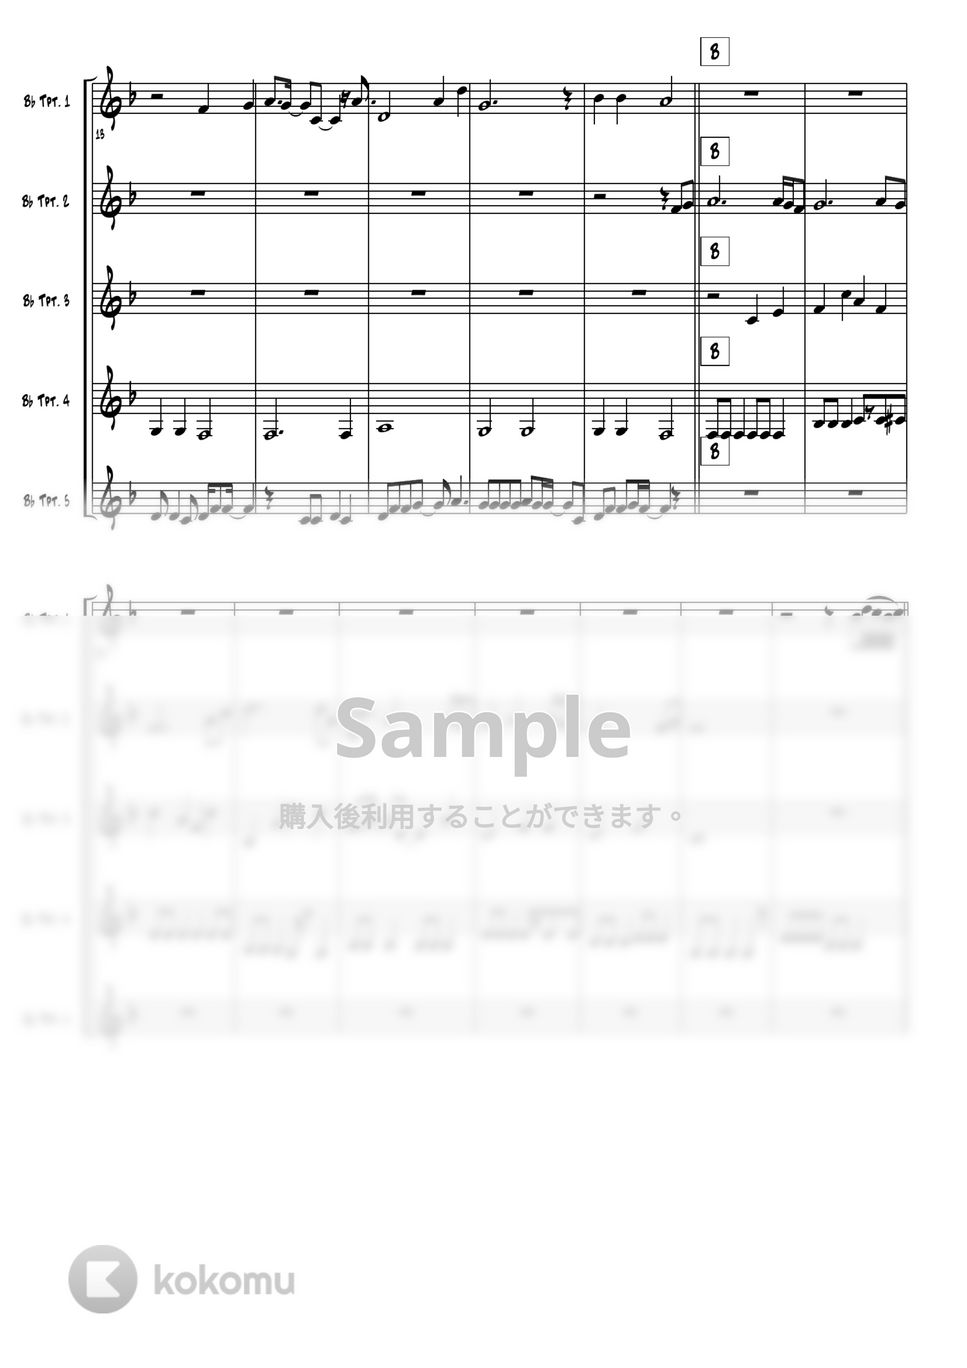 耳をすませば - カントリーロード (トランペット5重奏) by 高田将利